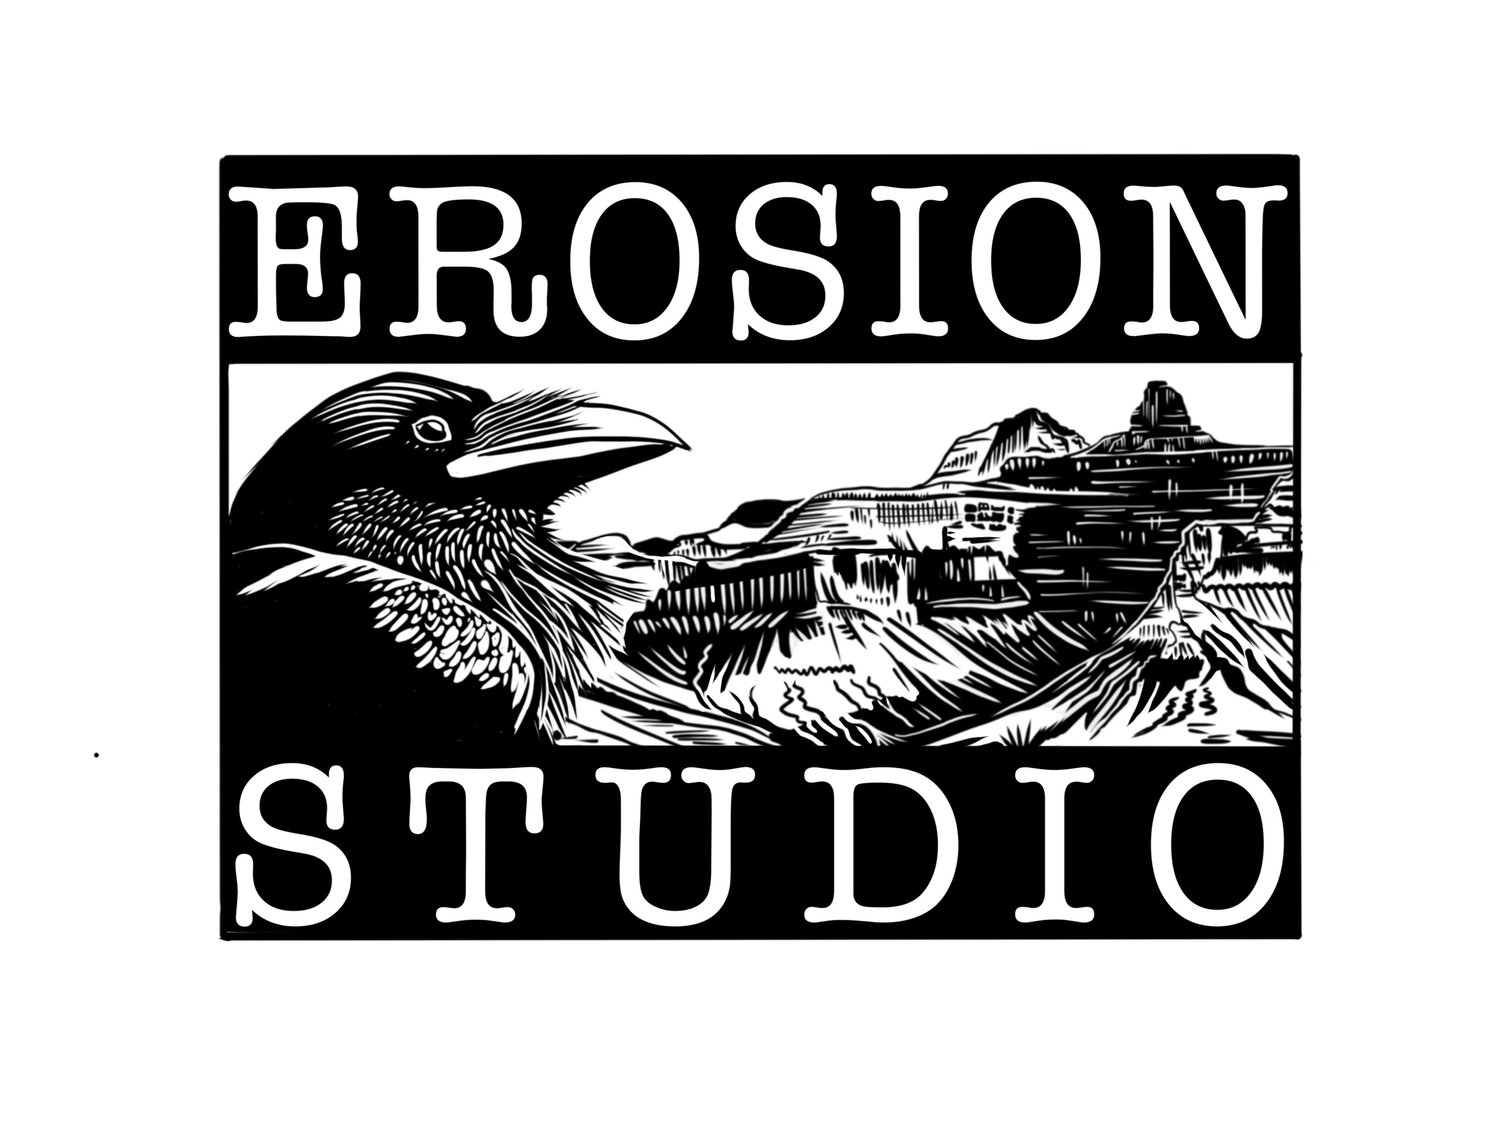 Erosion Studio